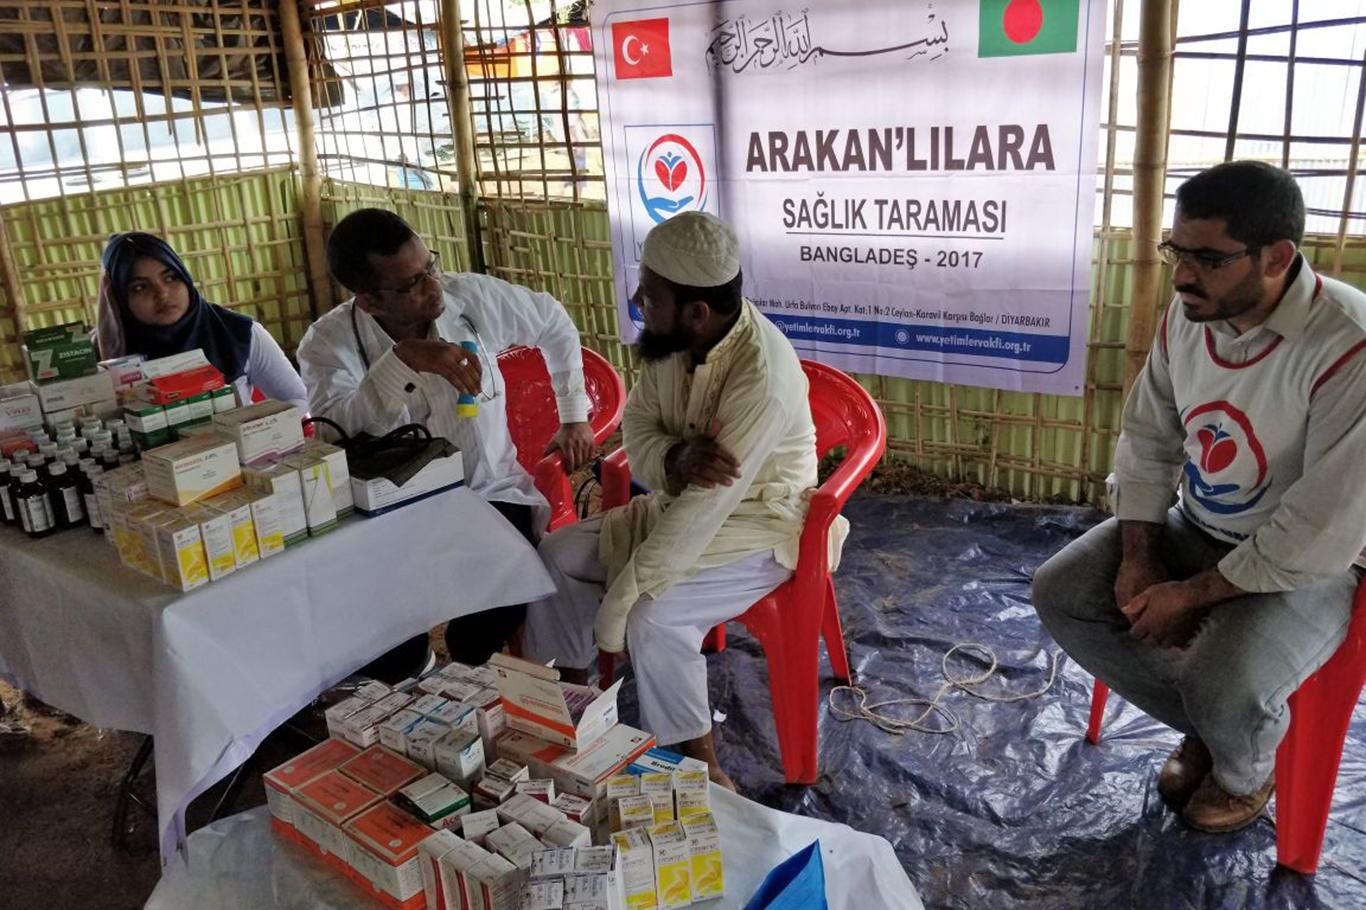 Bangladeş'teki kamplarda kalan Arakanlılar sağlık taramasından geçirildi